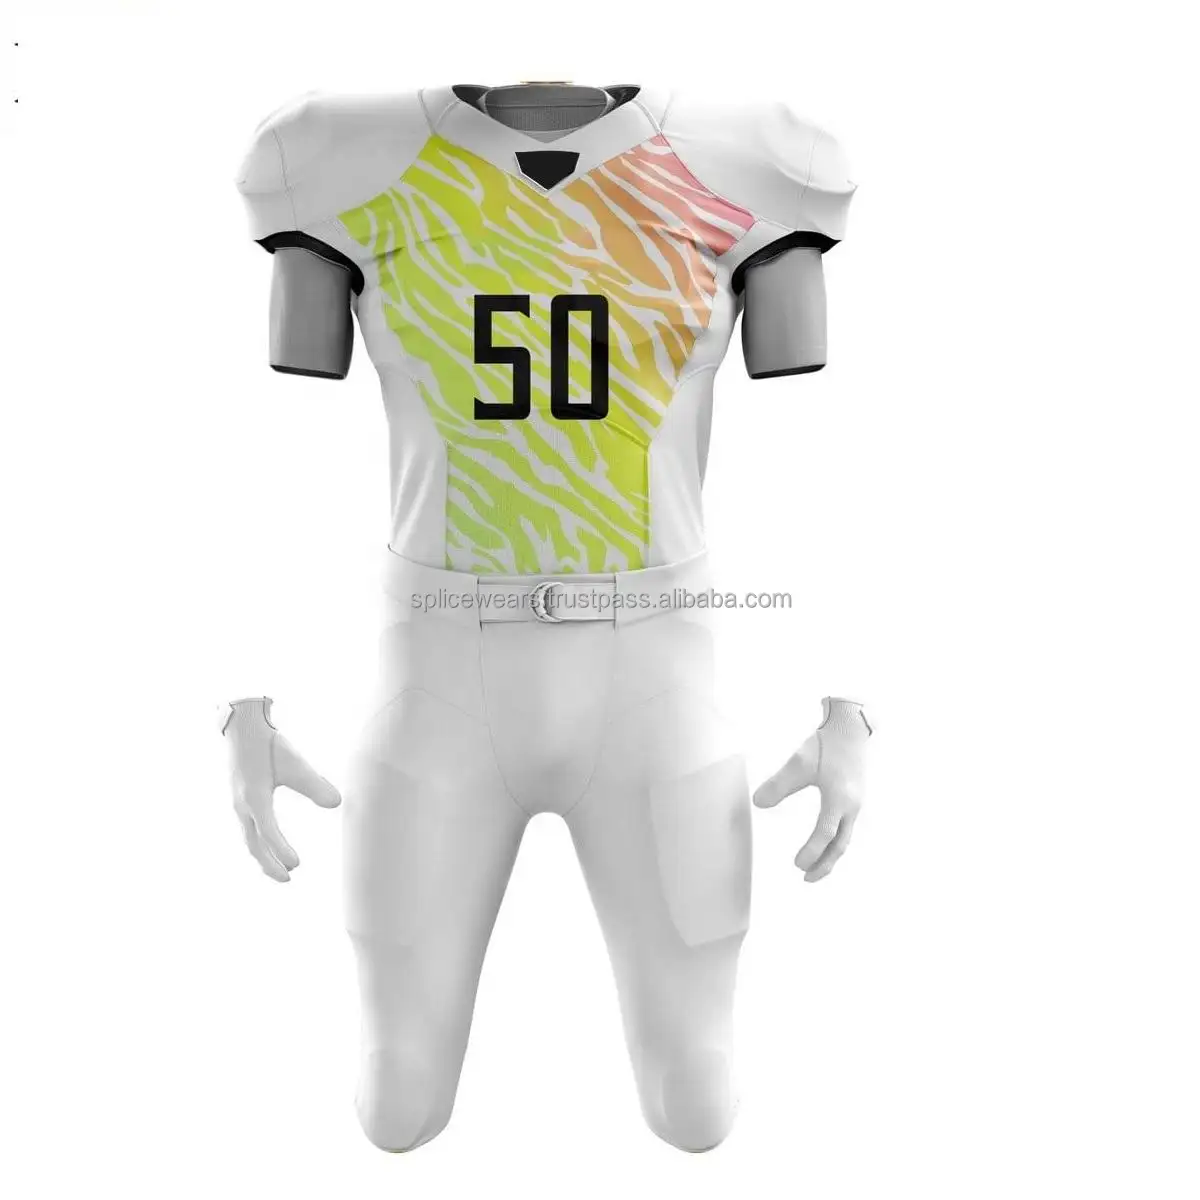 नई शैली सादे टीम कस्टम सबलिमिनेशन अमेरिकी फुटबॉल जर्सी हॉट बिक्री नई डिजाइन टीम 100% पॉलिएस्टर कपड़े